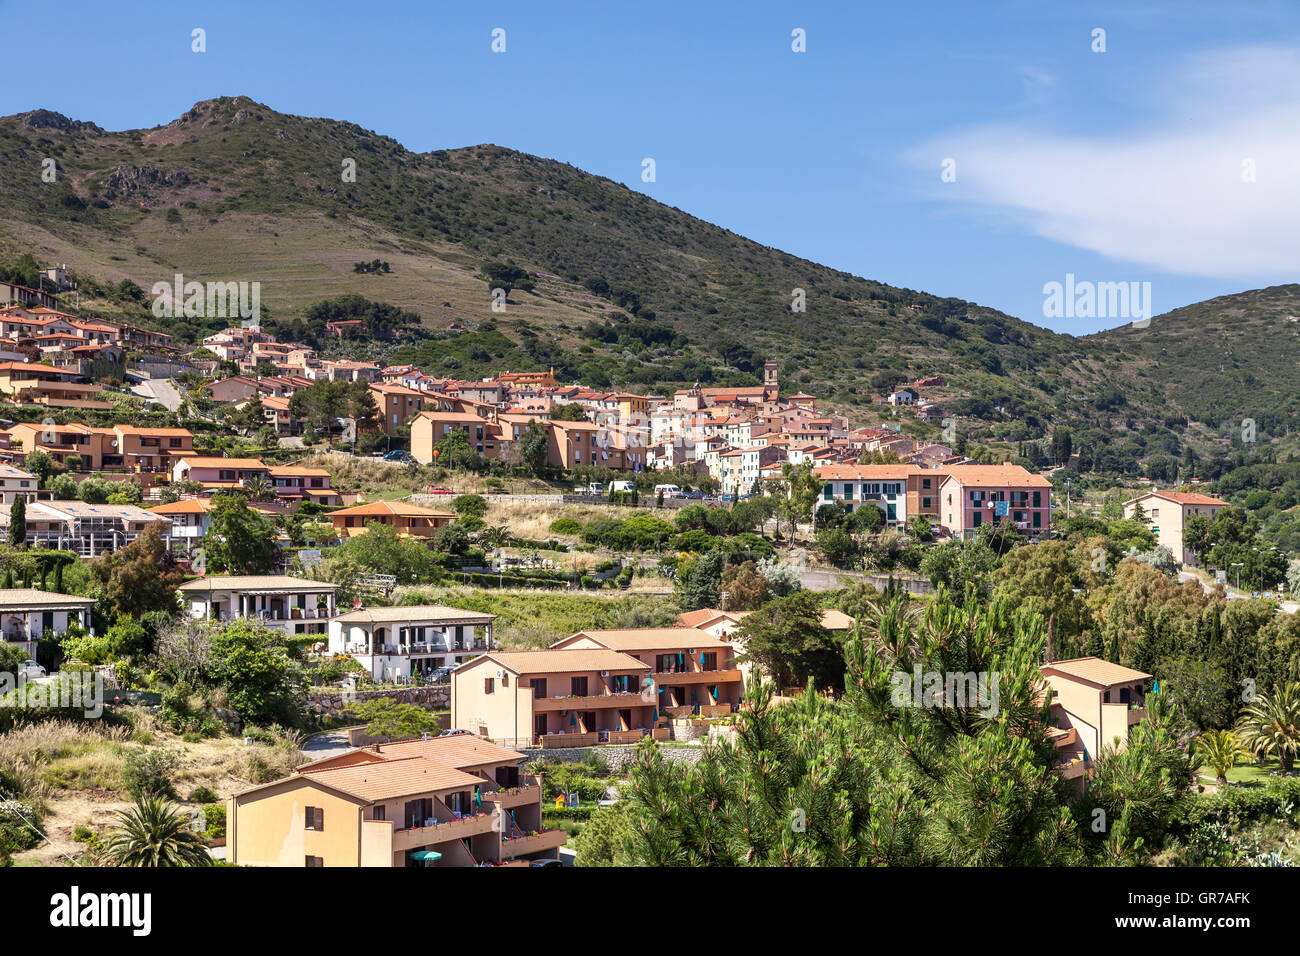 Rio nell'Elba, Village à une colline, l'île d'Elbe, Toscane, Italie, Europe Banque D'Images